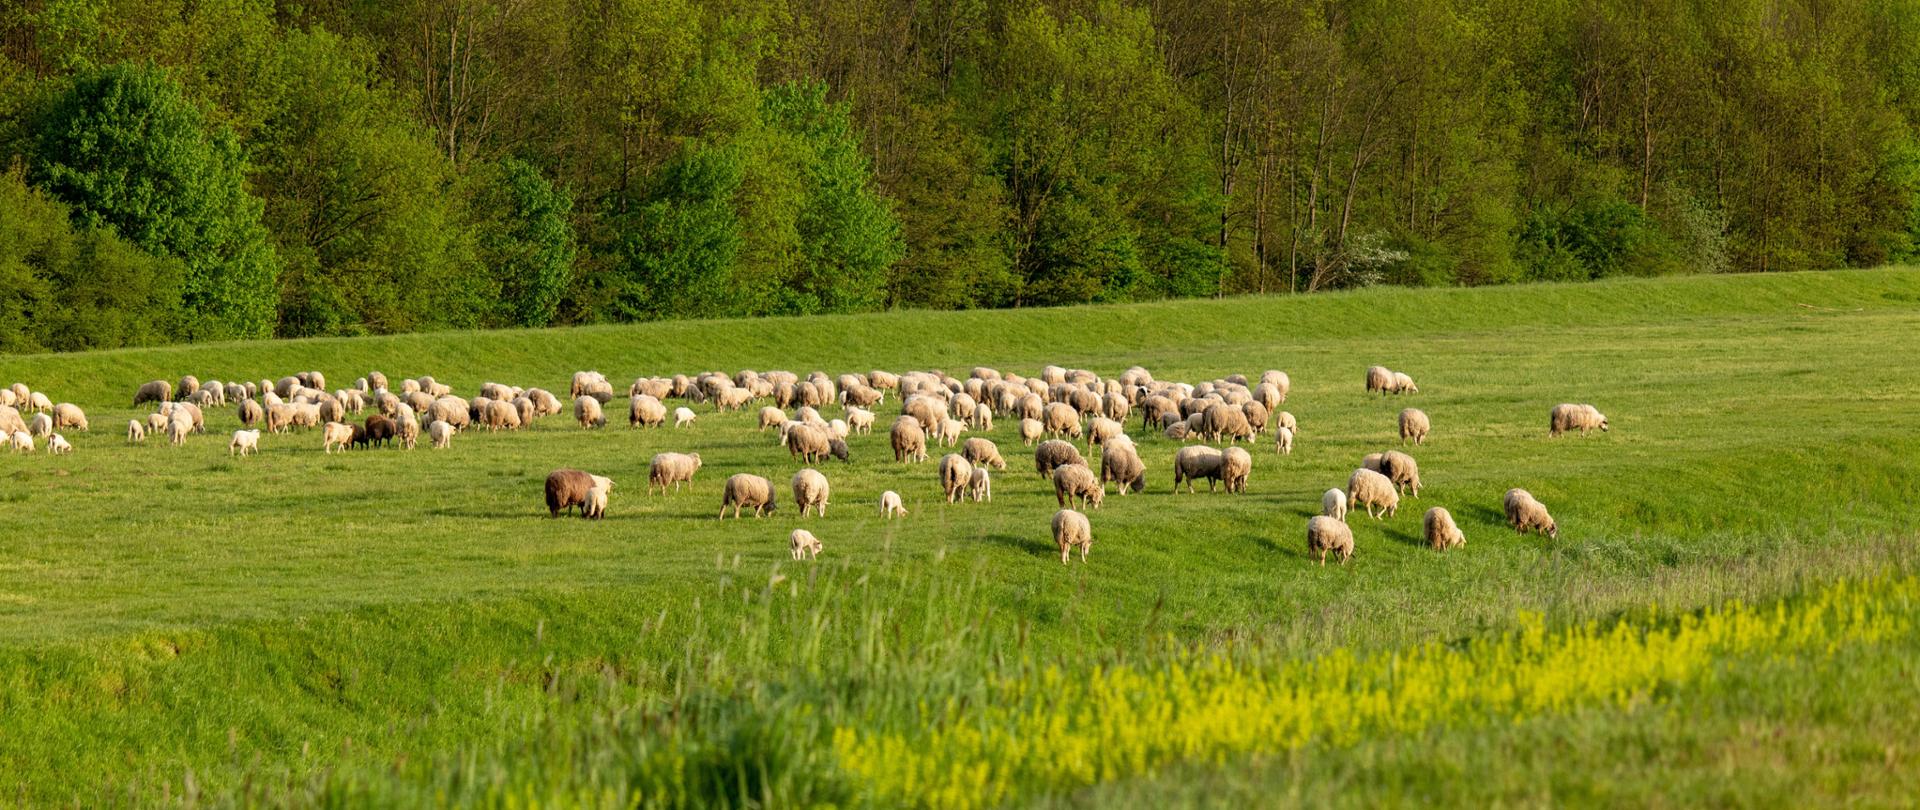 Zdjęcie autorstwa Vladimir Srajber z Pexels: https://www.pexels.com/pl-pl/zdjecie/wies-gospodarstwo-wiejski-owca-16579263/wypas owiec